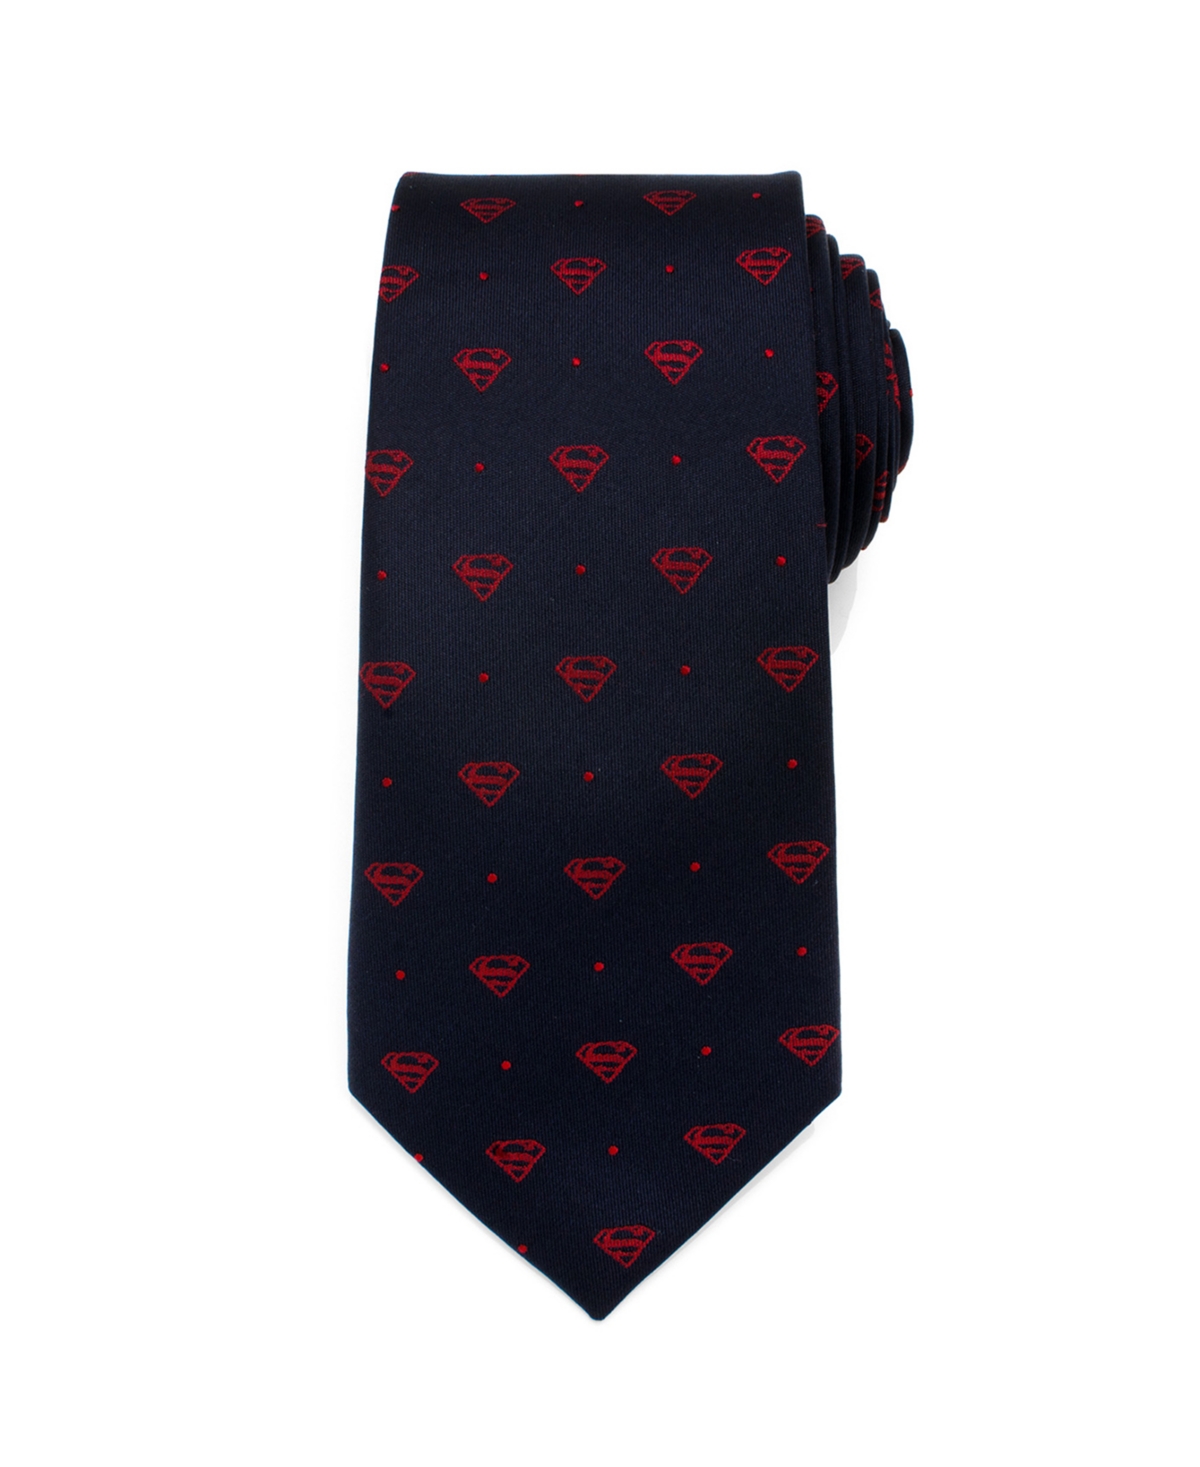 Superman Shield Dot Men's Tie - Multi